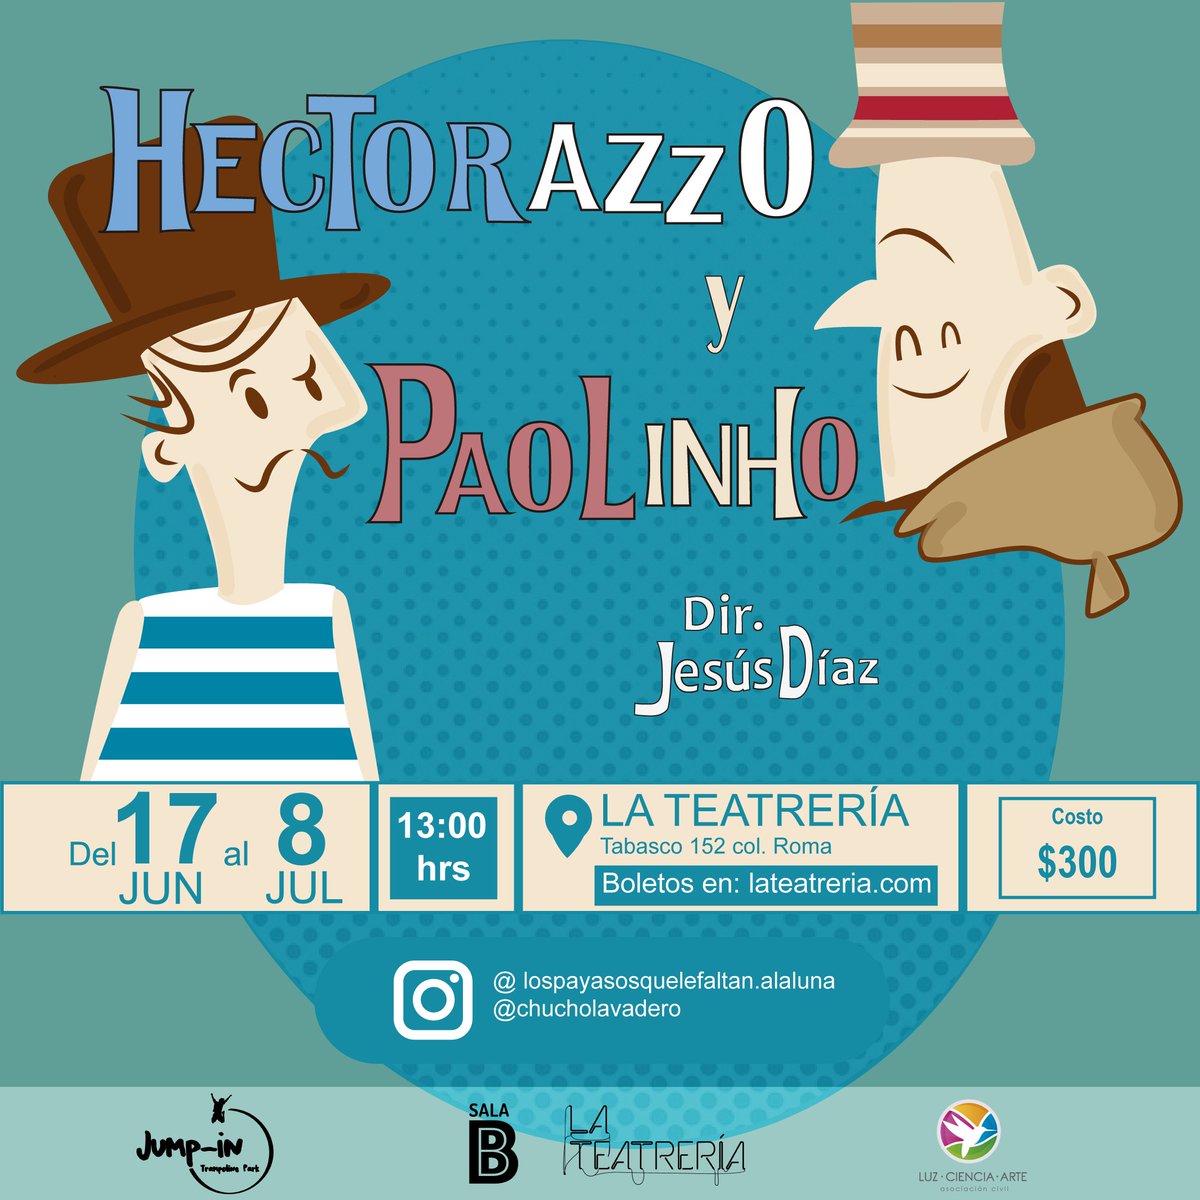 ¡Última función! #HectorazzoYPaolinhho este sábado en La Teatrería a las 13 hrs, consigue tus boletos aquí 👉👉👉 bit.ly/HectorazzoyPao…